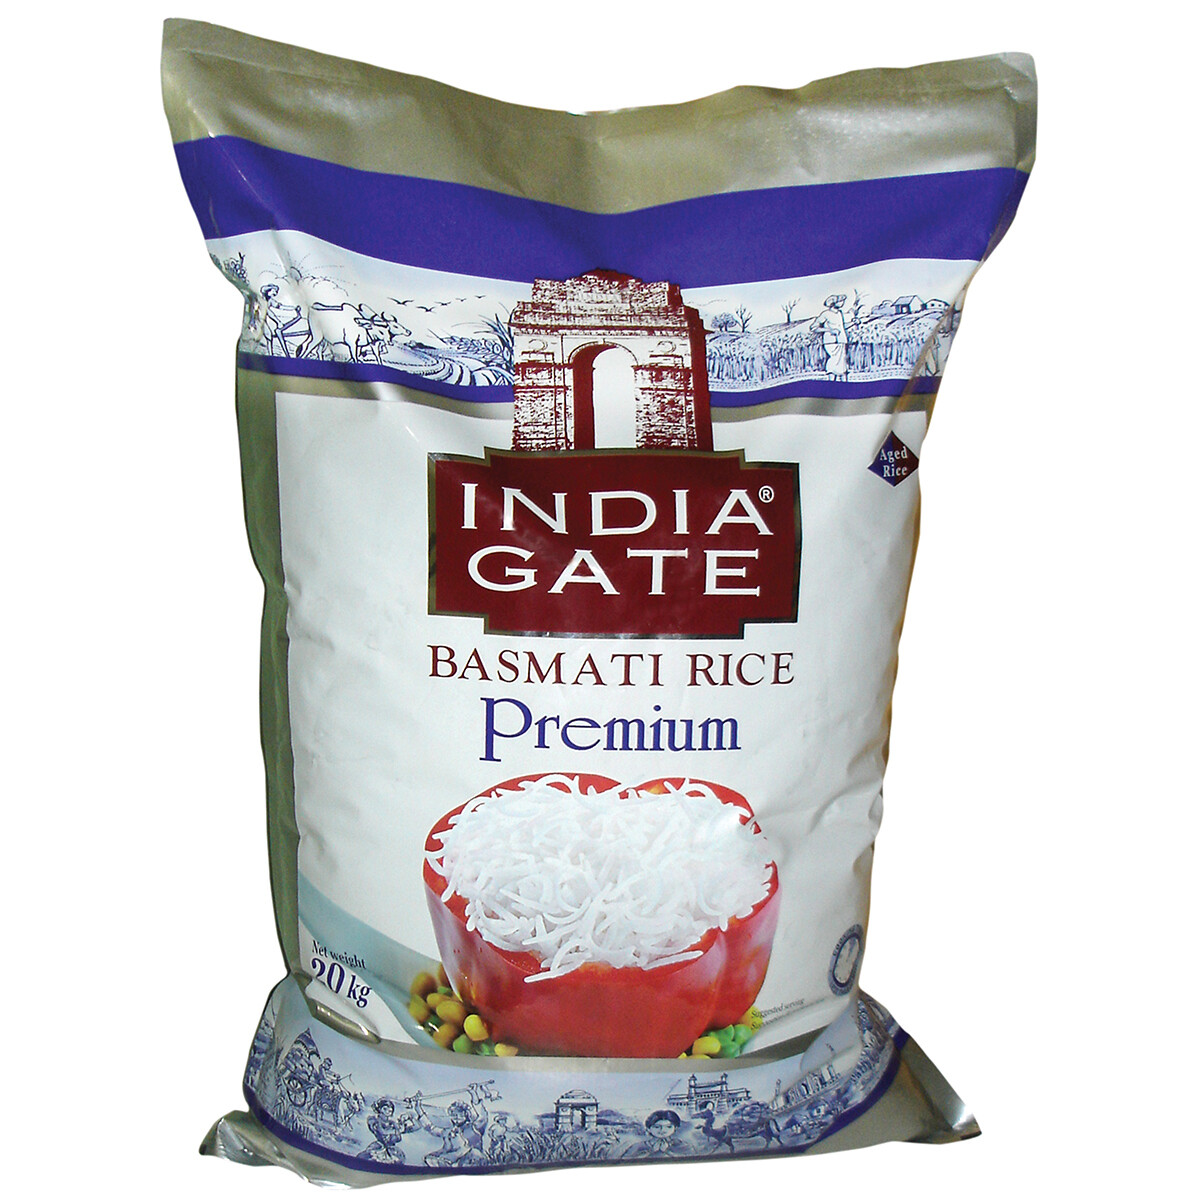 India Gate Premium Basmati Rice 40lb | 1 Bag